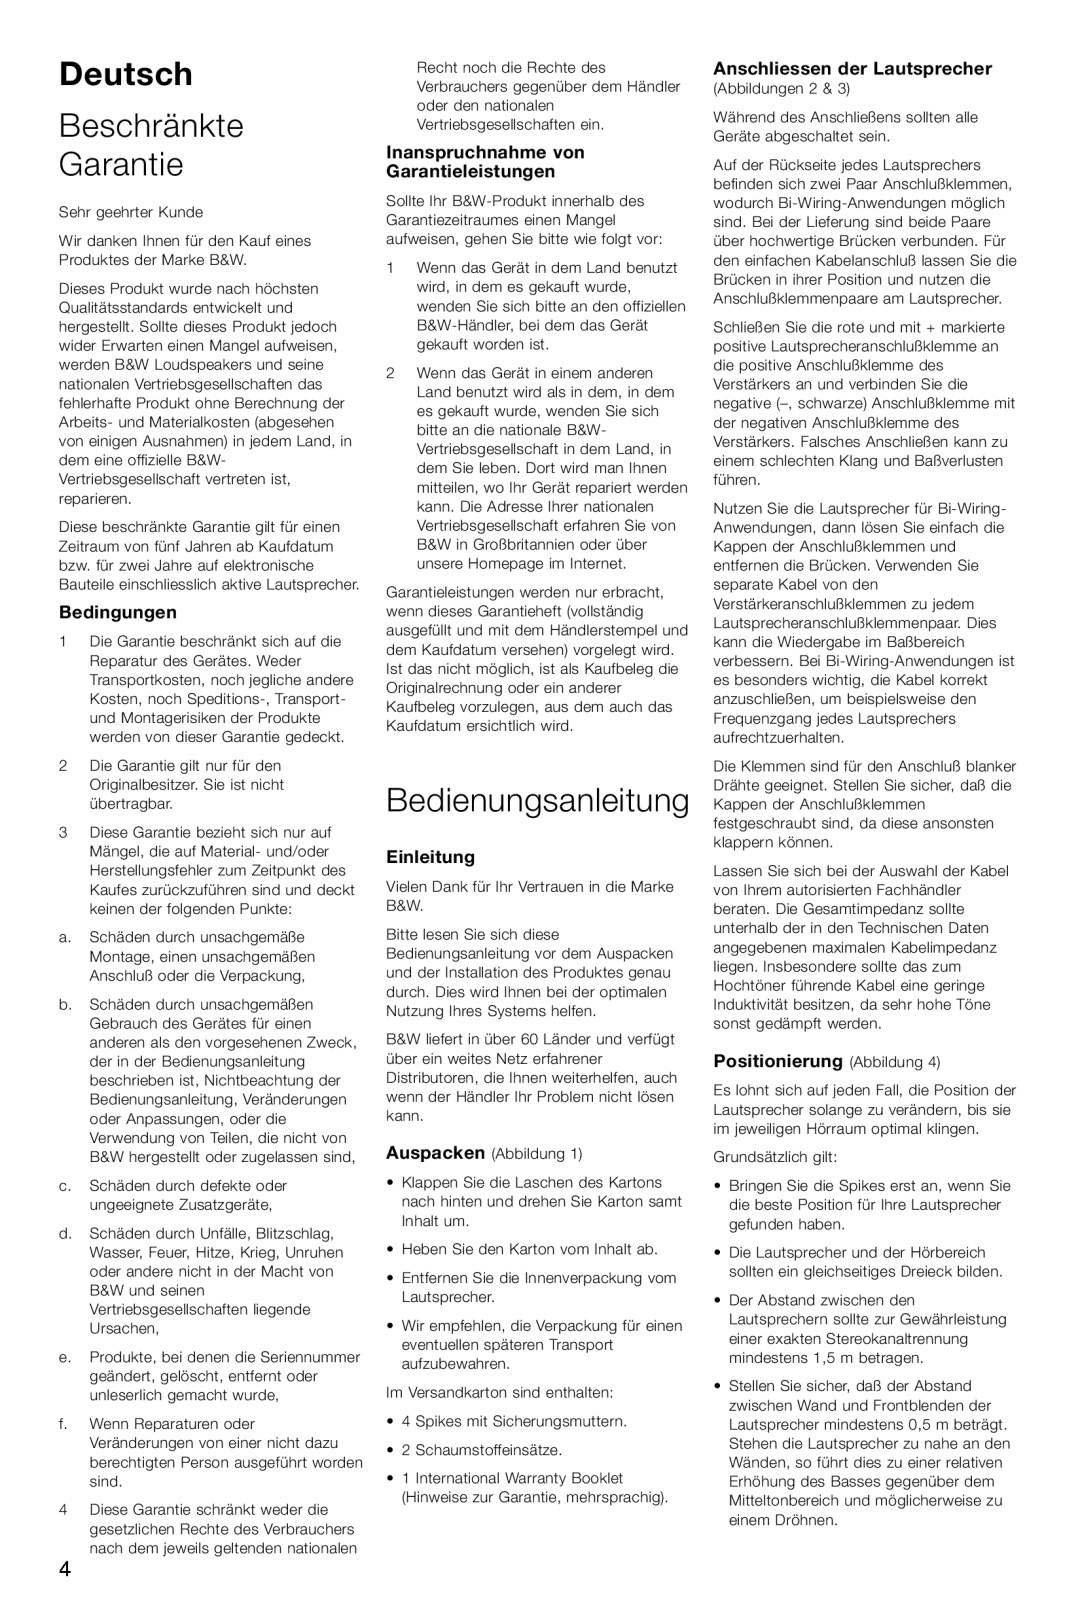 Bowers & Wilkins CM4 Deutsch, Beschränkte Garantie, Bedienungsanleitung, Bedingungen, Einleitung, Positionierung Abbildung 